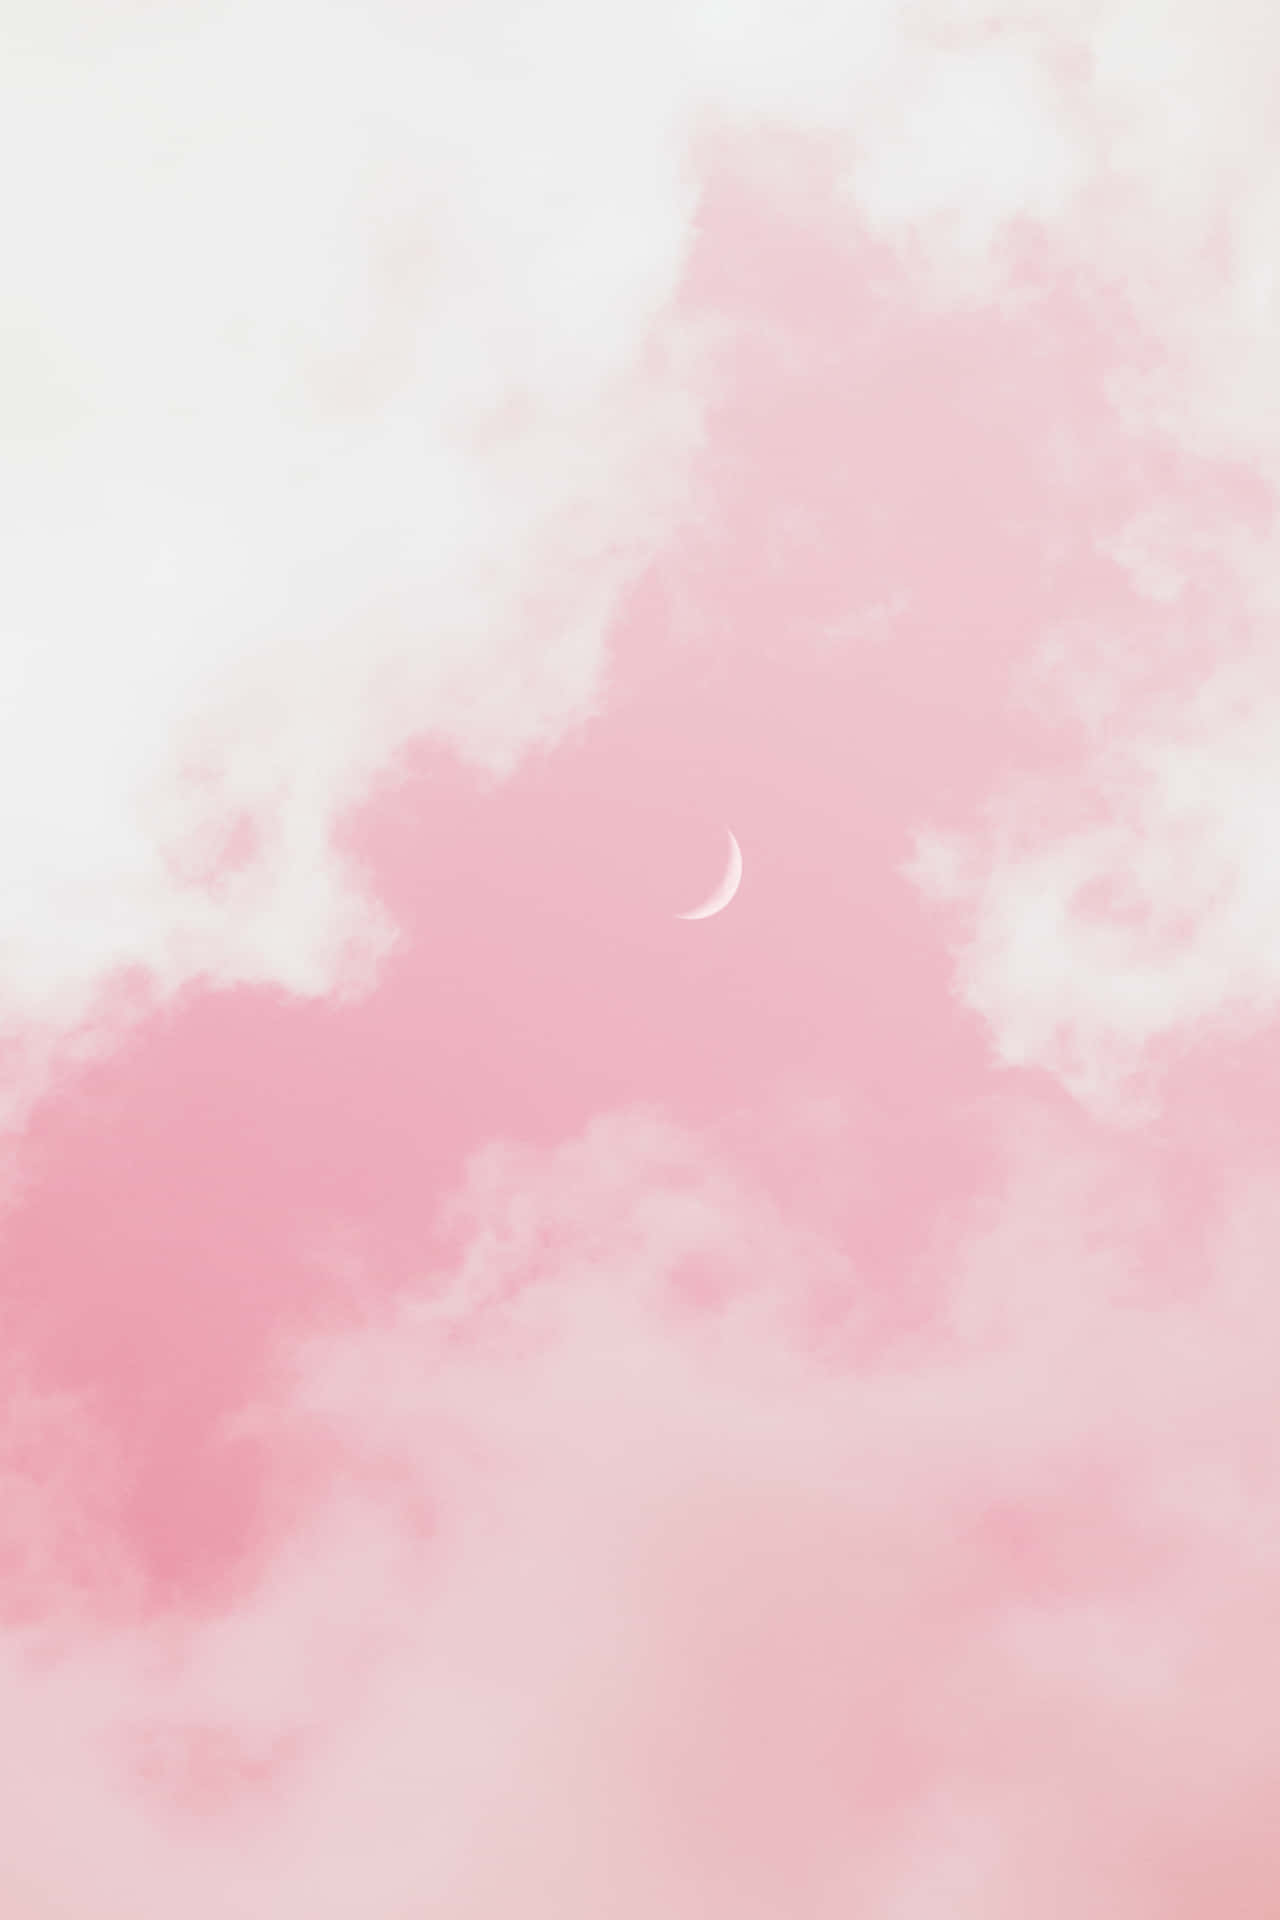 Sfondoestetico Rosa Con Mezza Luna Crescente.